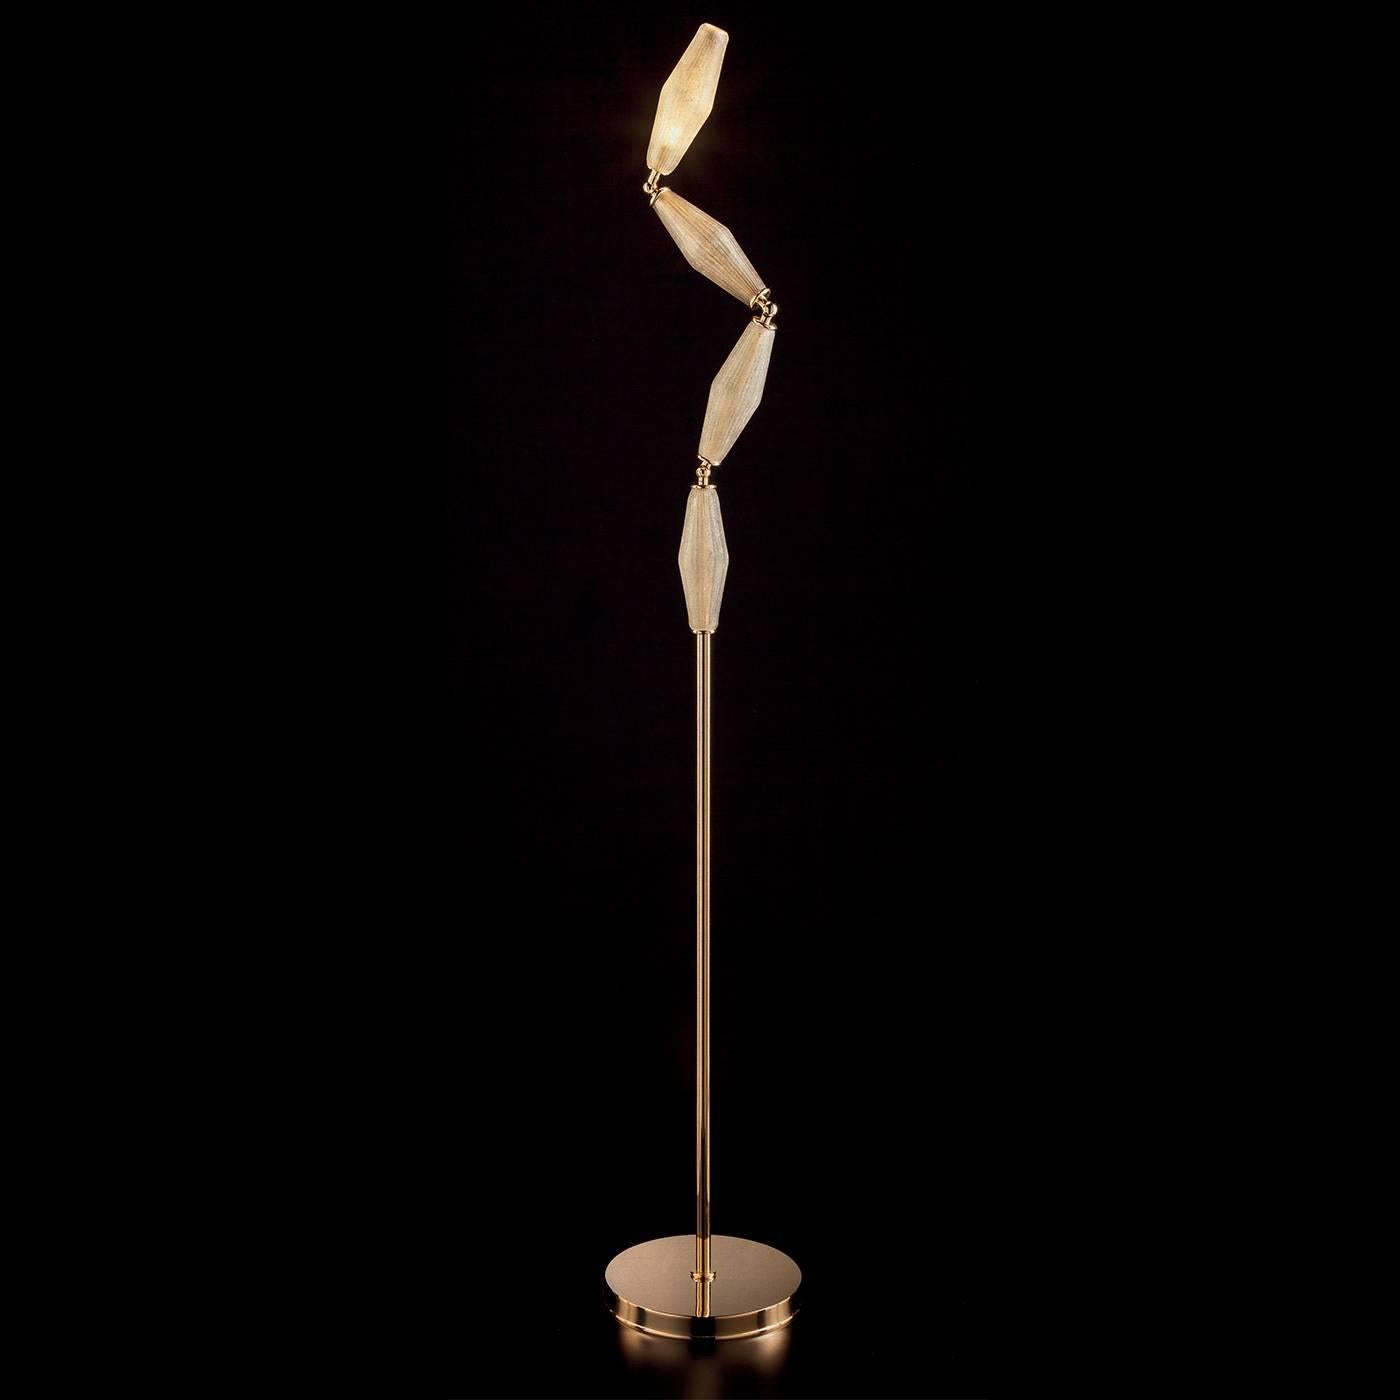 Ce superbe lampadaire moderne conçu par Euroluce Light of Italy & Studio in Project a été nommé à l'origine Pinocchio pour la marionette fictive en bois créée par Collodi. La base circulaire métallique et le poteau supportent quatre abat-jour en